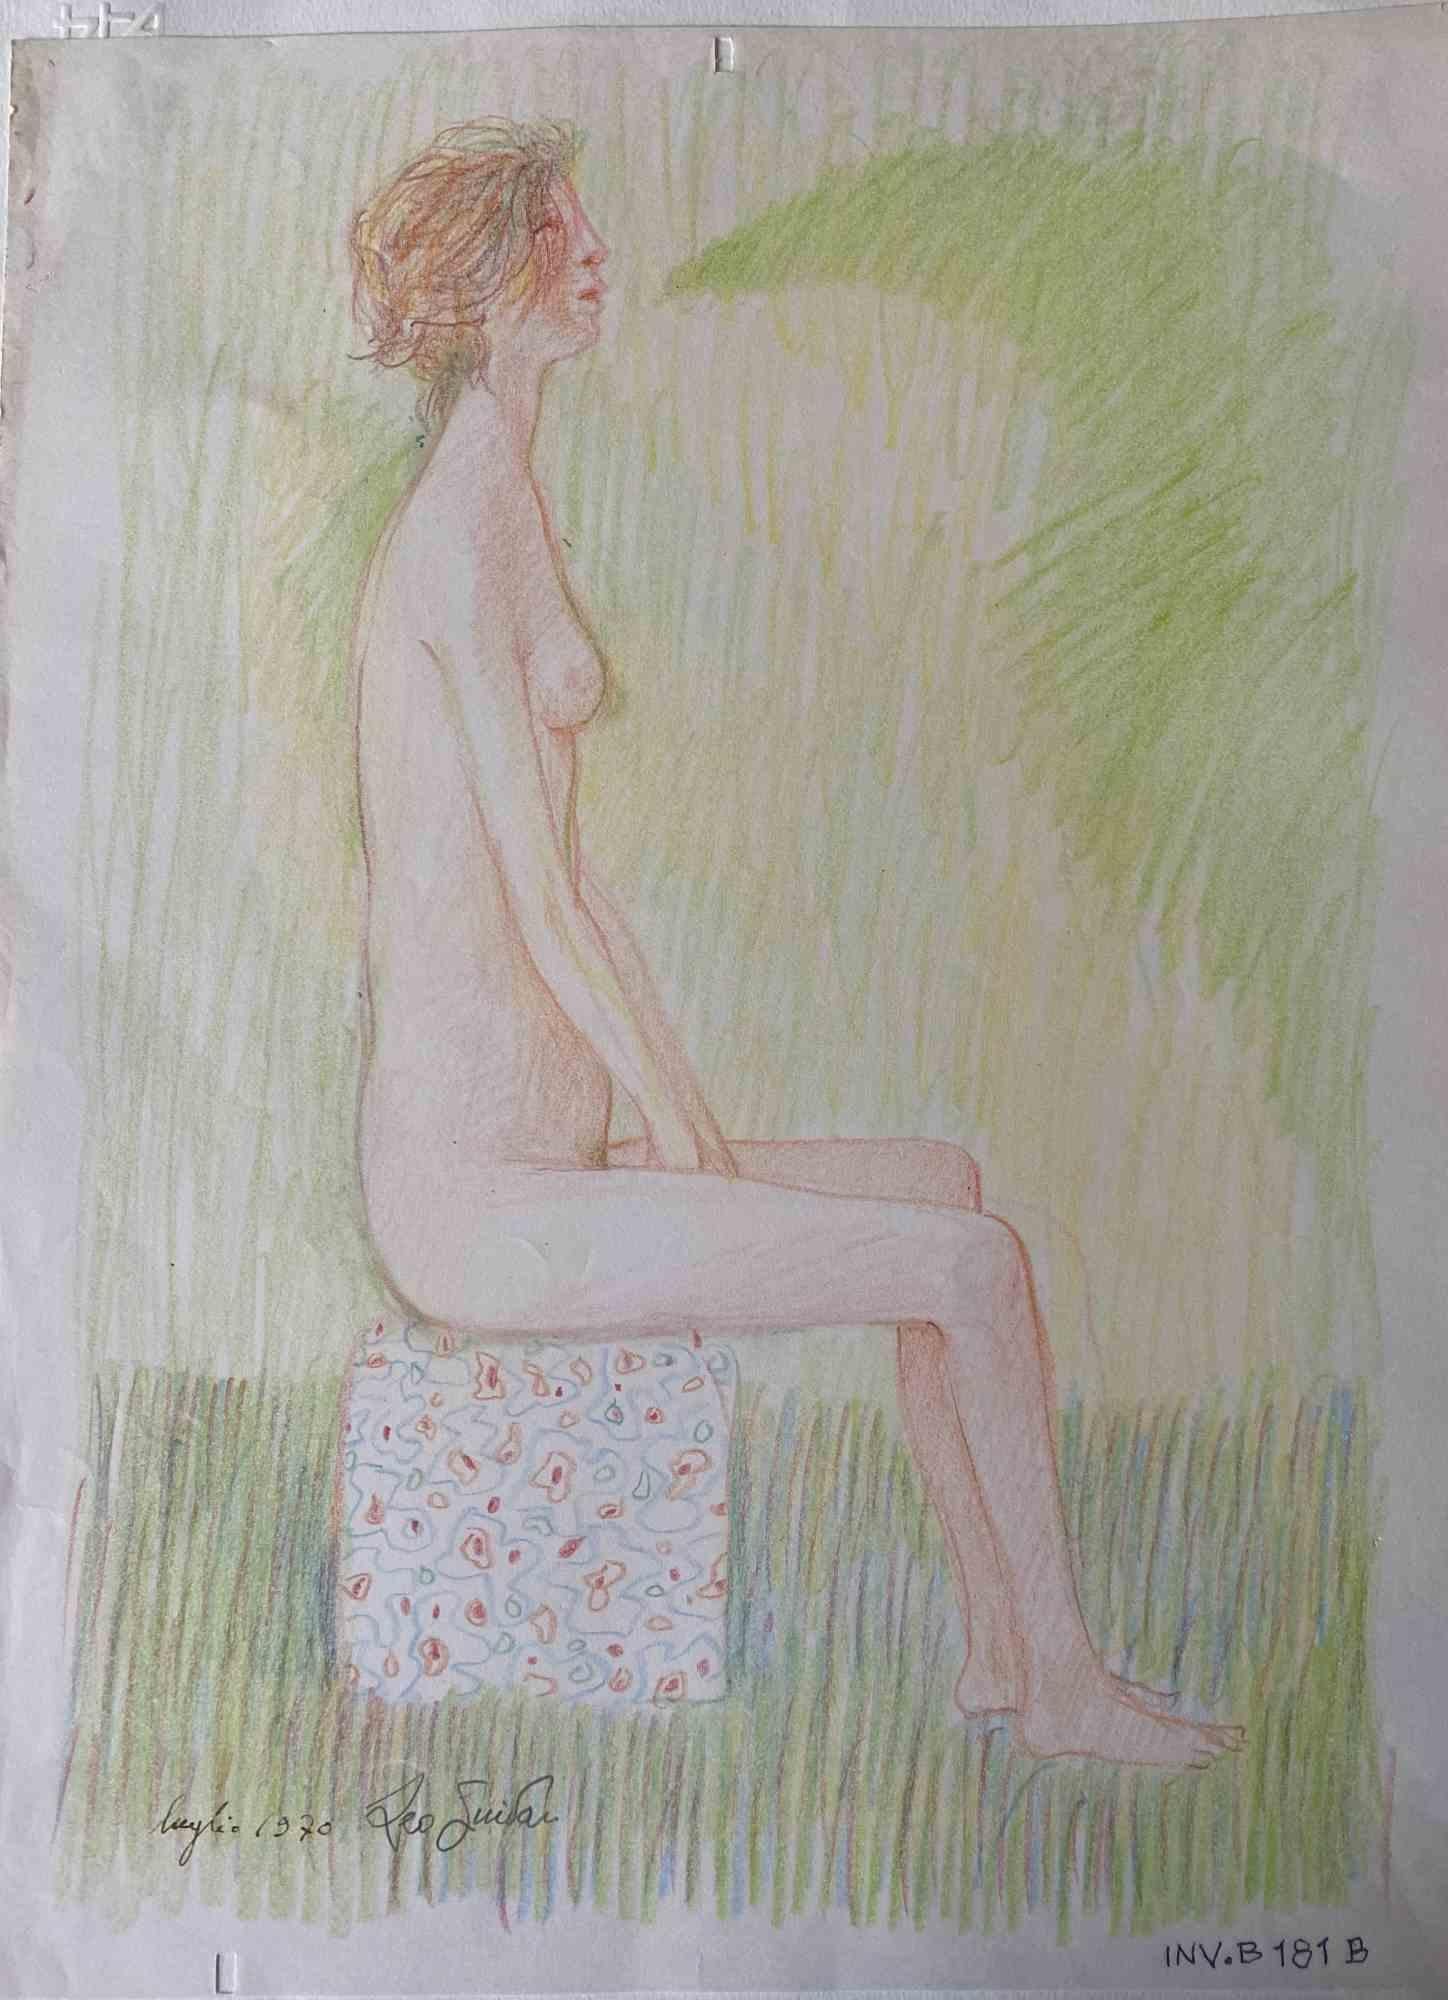 Nude ist ein originales zeitgenössisches Kunstwerk, das 1970 von dem italienischen zeitgenössischen Künstler  Leo Guida  (1992 - 2017).

Originalzeichnung in Farbstift auf elfenbeinfarbenem Papier, auf Karton geklebt (50 x 35 cm)

Am unteren Rand